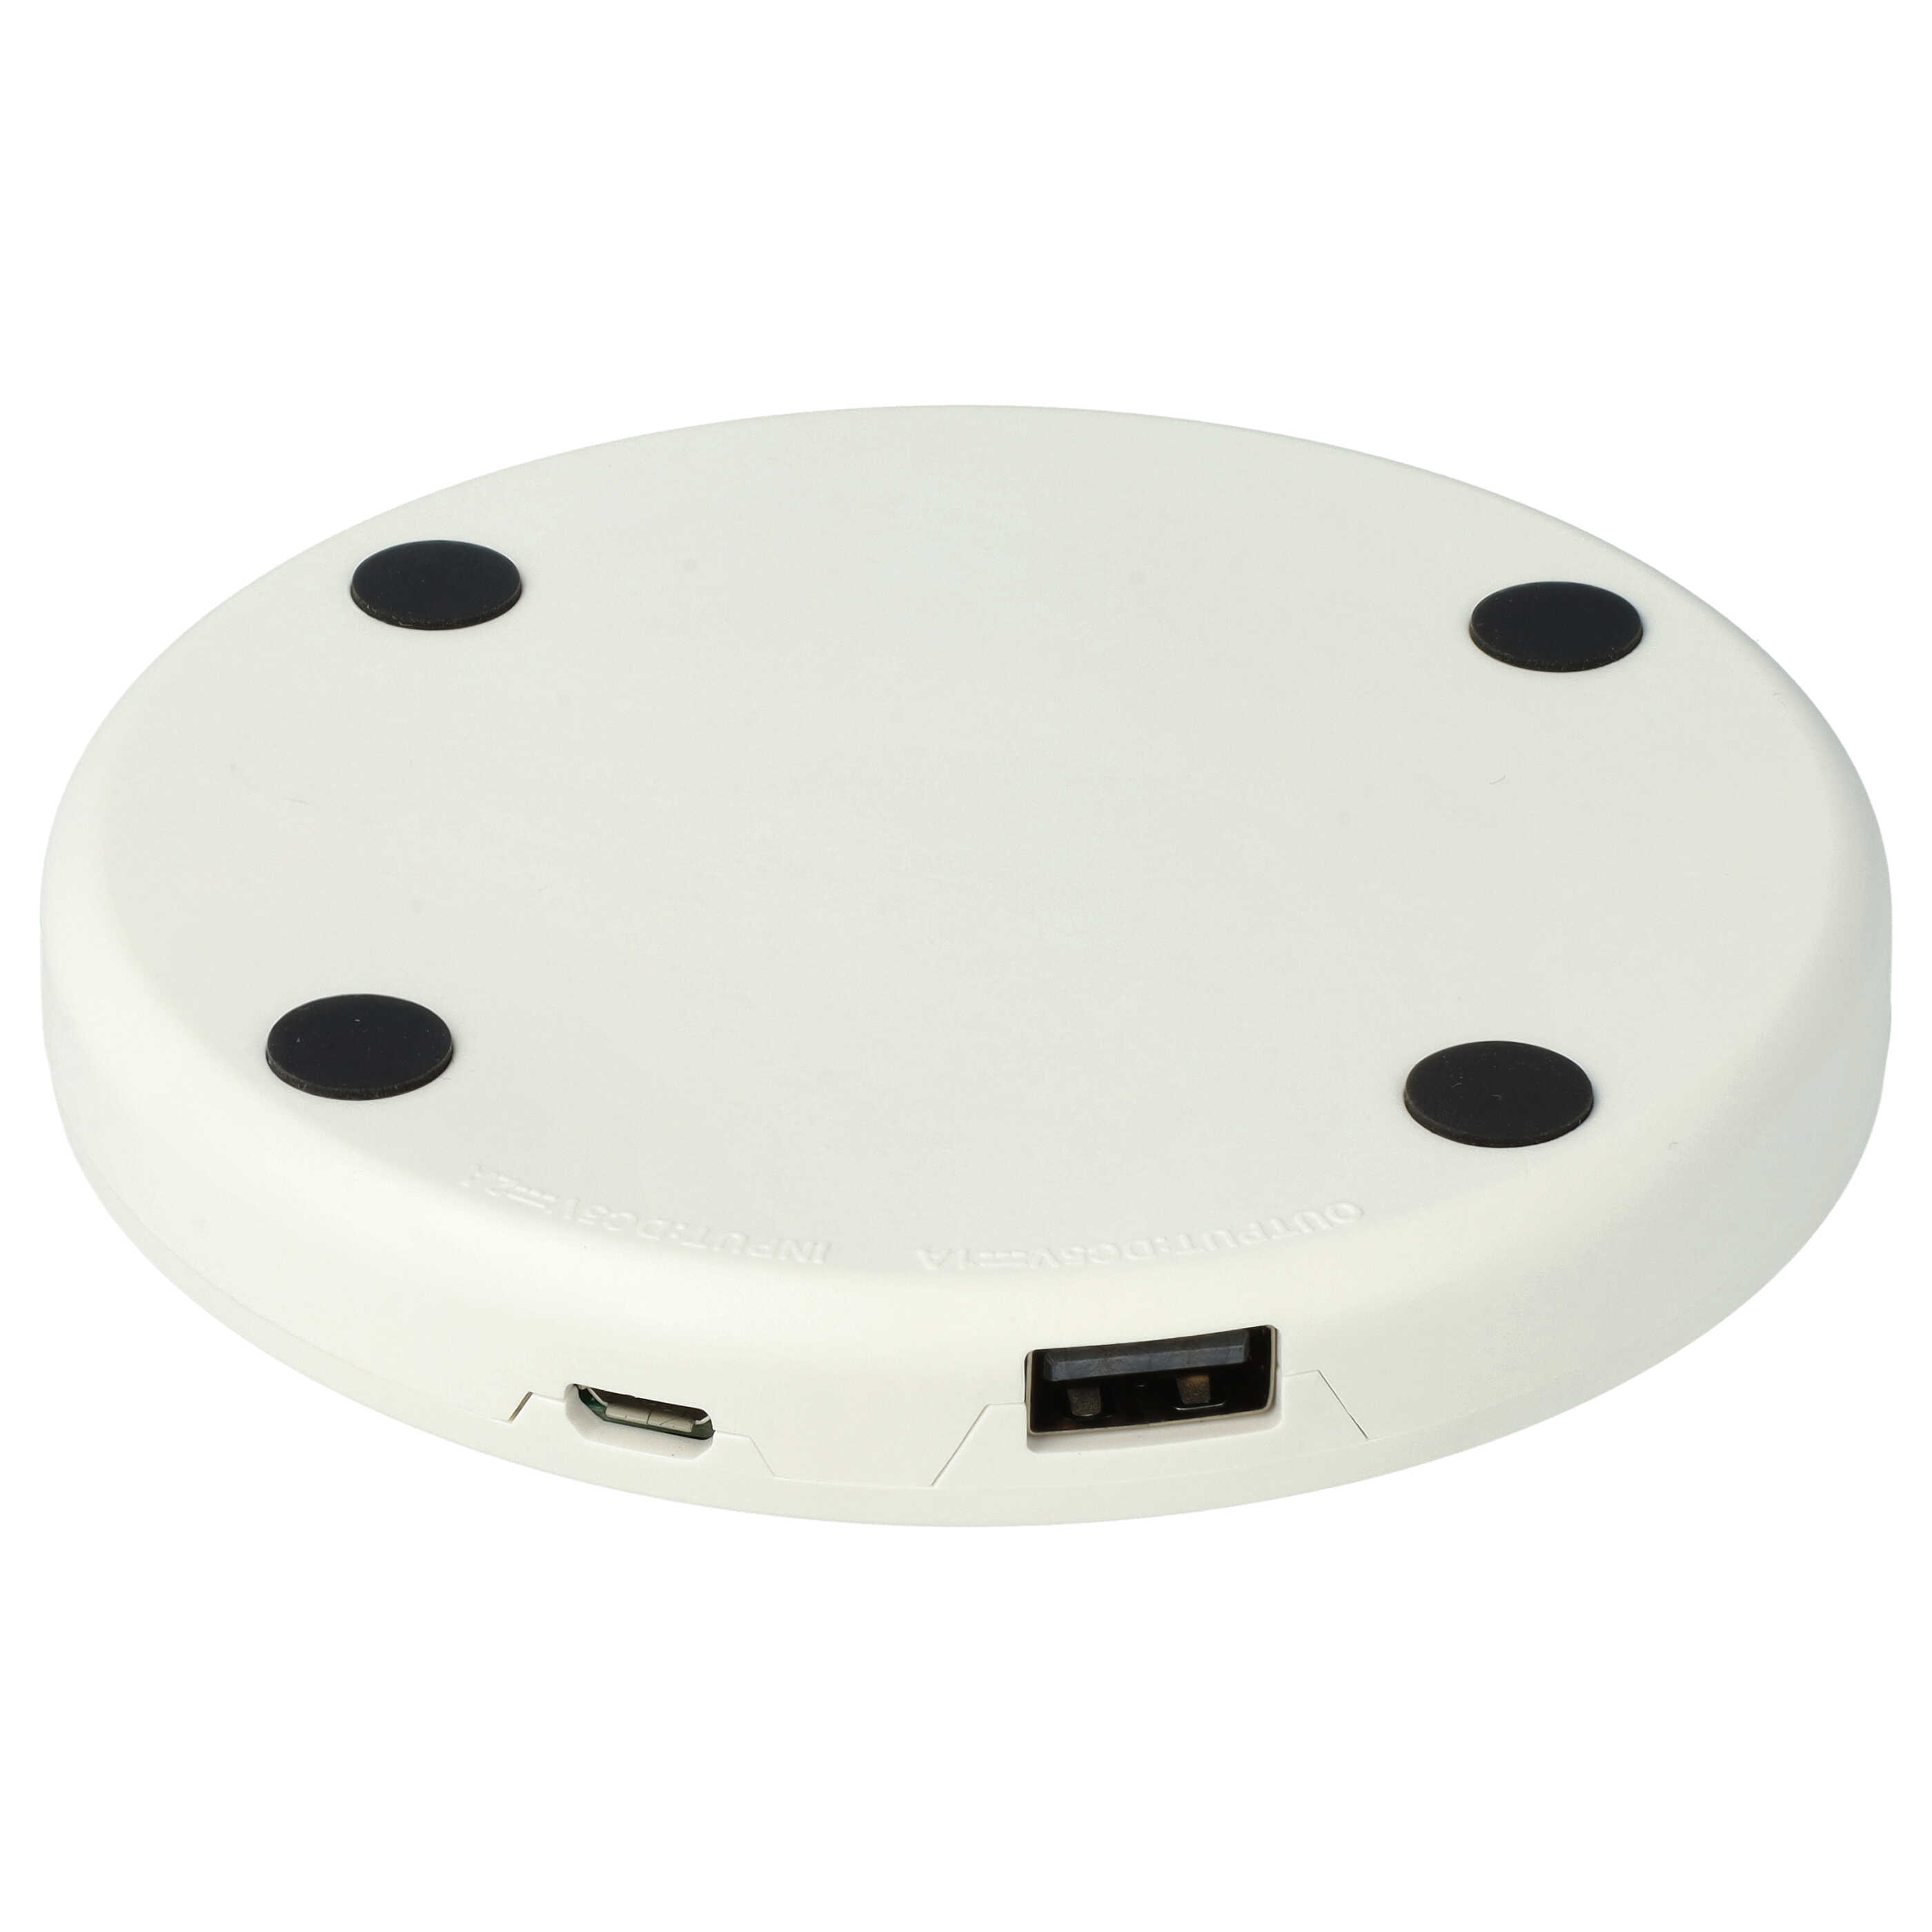 USB-Ladestation passend für Bose SoundLink Revolve, Revolve+ Lautsprecher - Ladeschale + Micro USB Ladekabel 9